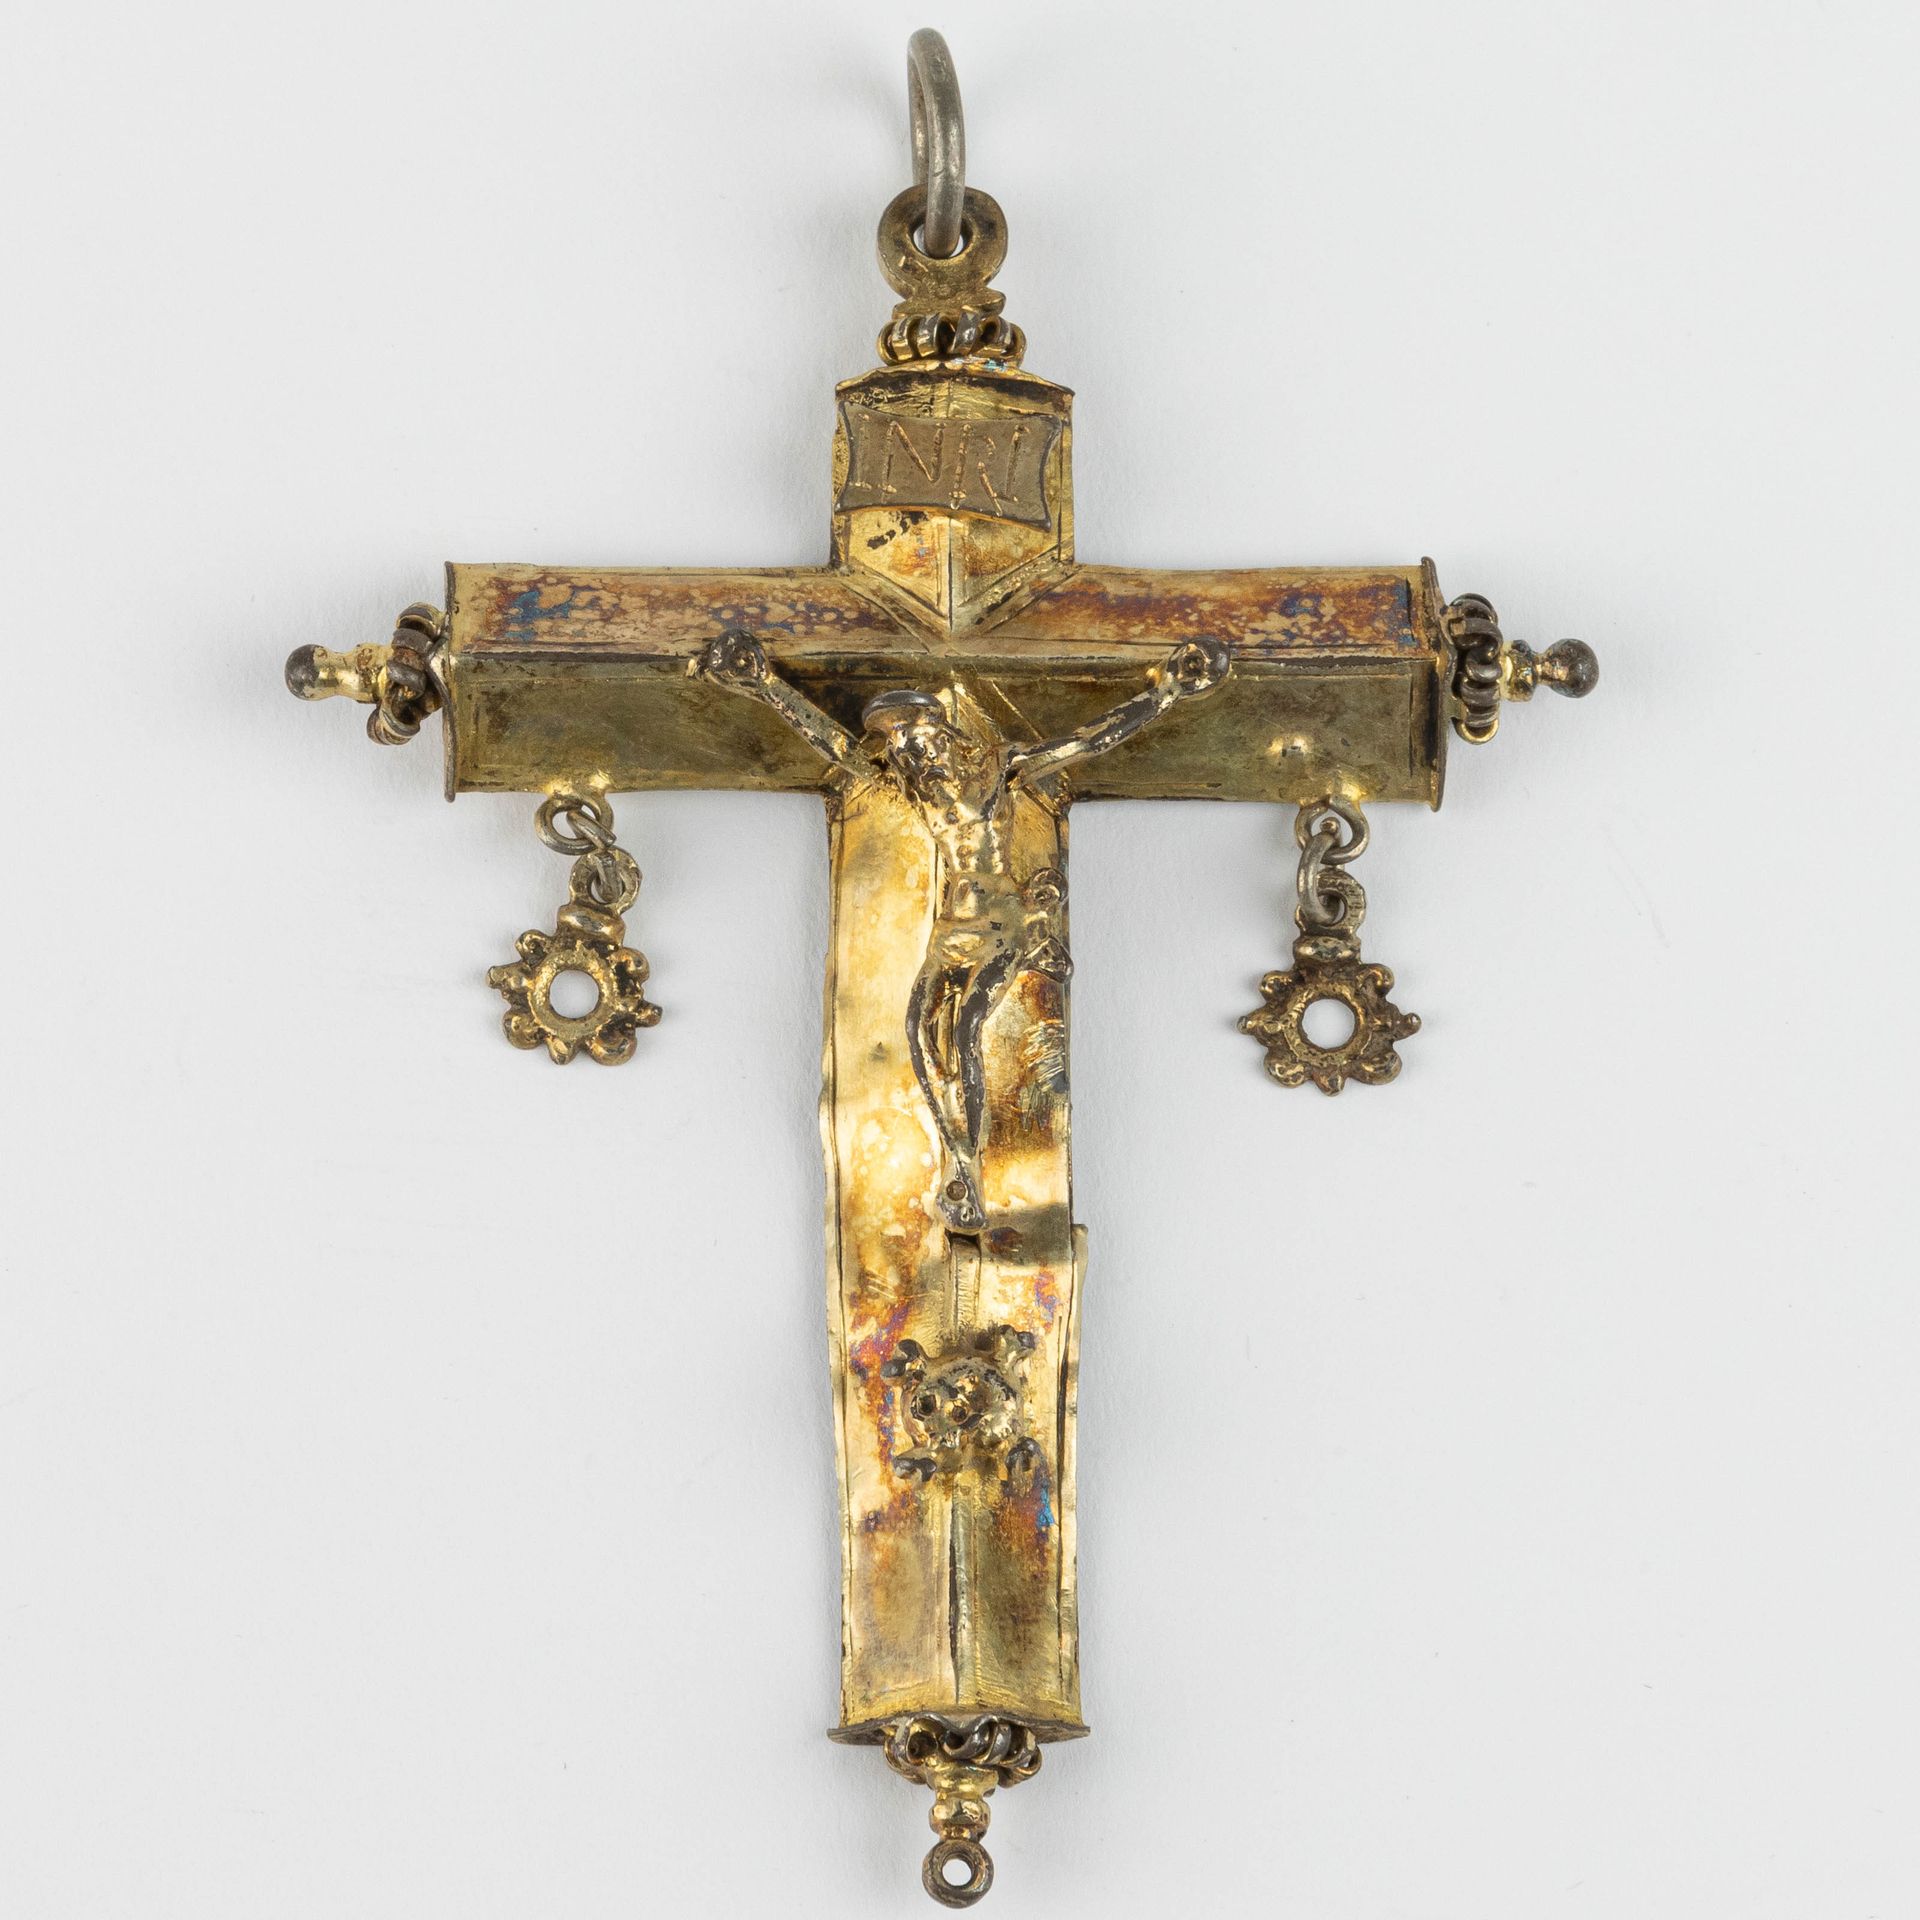 Pendentif avec crucifix. Allemagne. Fin du 15ème siècle. 带十字架的吊坠。德国。15世纪晚期。

鎏金银&hellip;